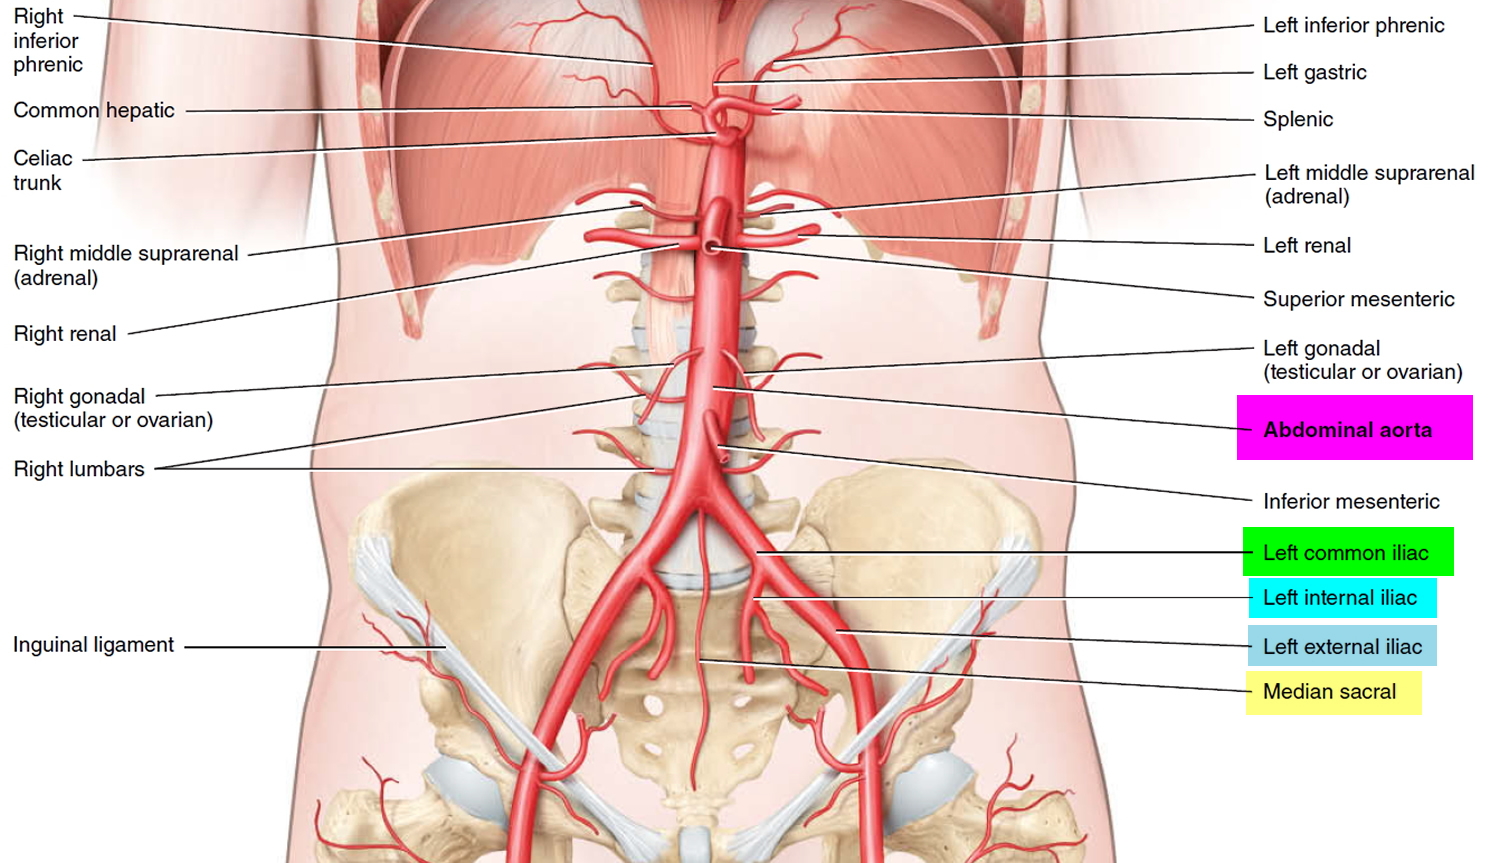 Iliac Artery - Common iliac artery, Internal & External iliac artery